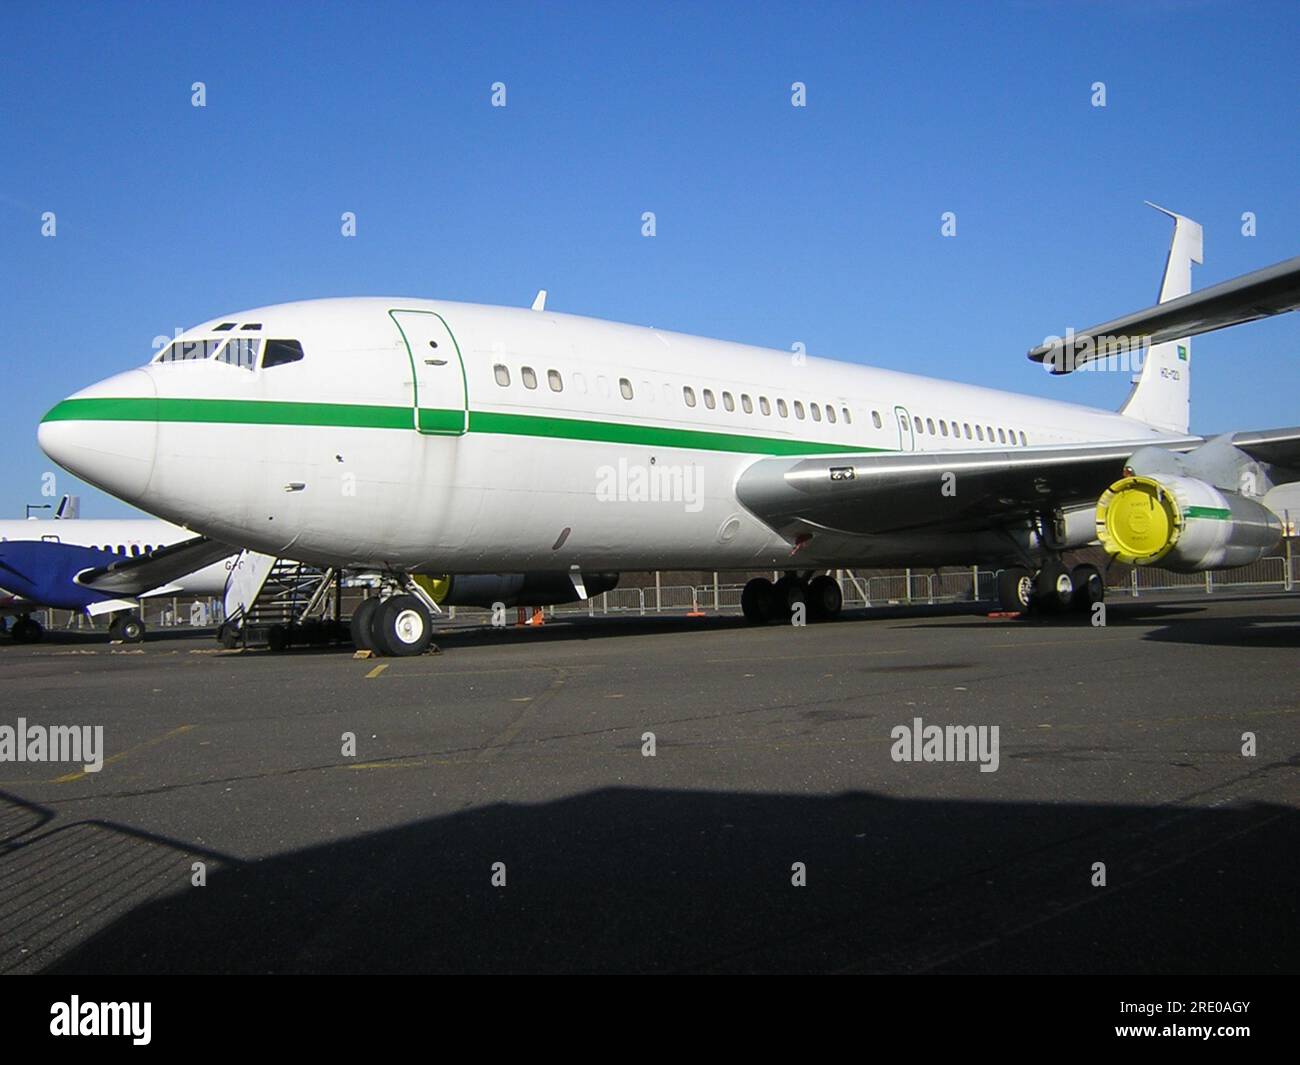 Boeing 707 HZ-123 de l'ancien gouvernement saoudien entreposé à l'aéroport de Southend. Restauré plus tard dans la livrée QANTAS précédente par Founders Museum & Fly Home Banque D'Images